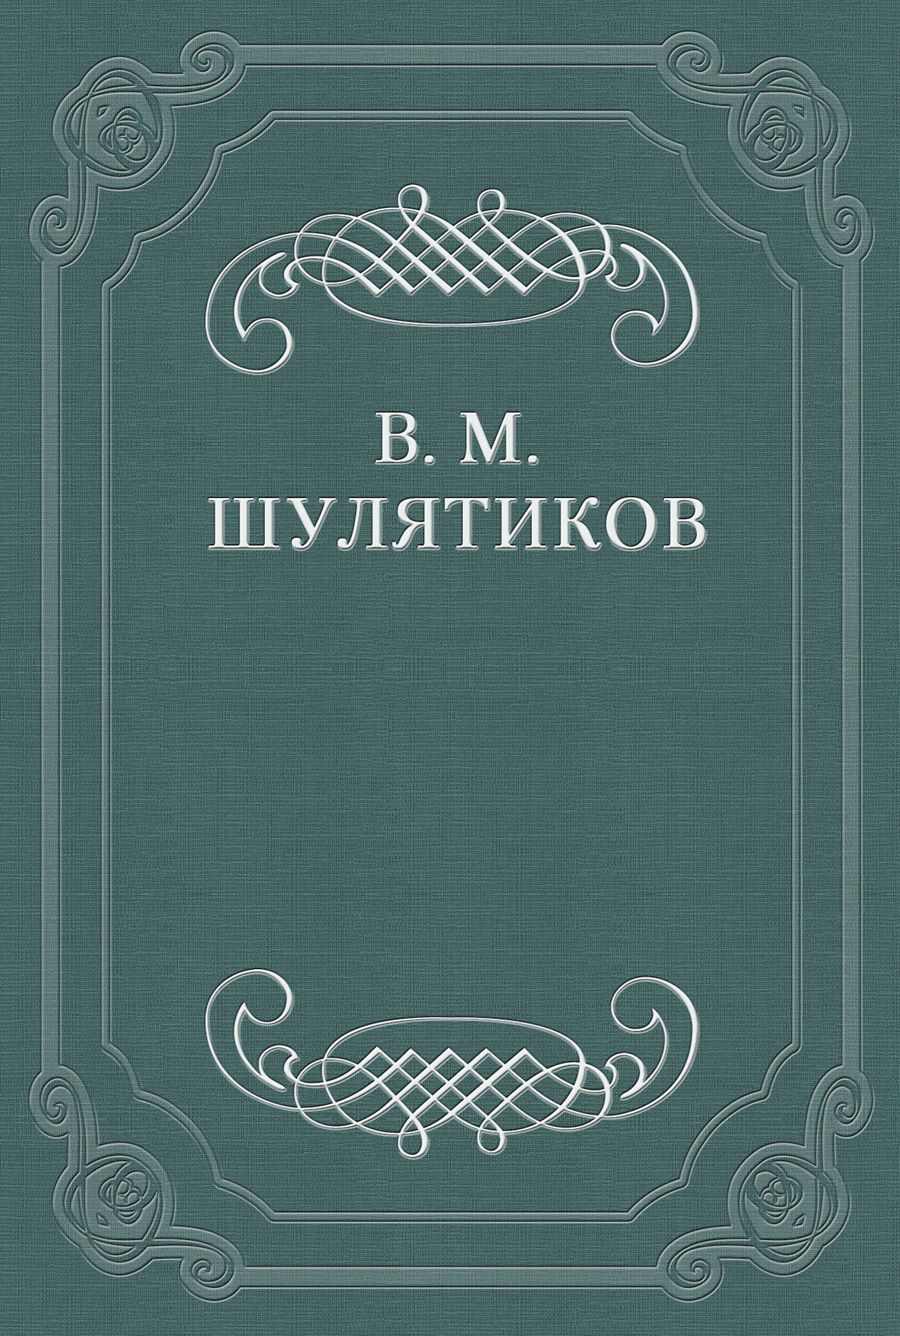 Книга И. Ф. Горбунов из серии , созданная Владимир Шулятиков, может относится к жанру Критика. Стоимость книги И. Ф. Горбунов  с идентификатором 662435 составляет 5.99 руб.